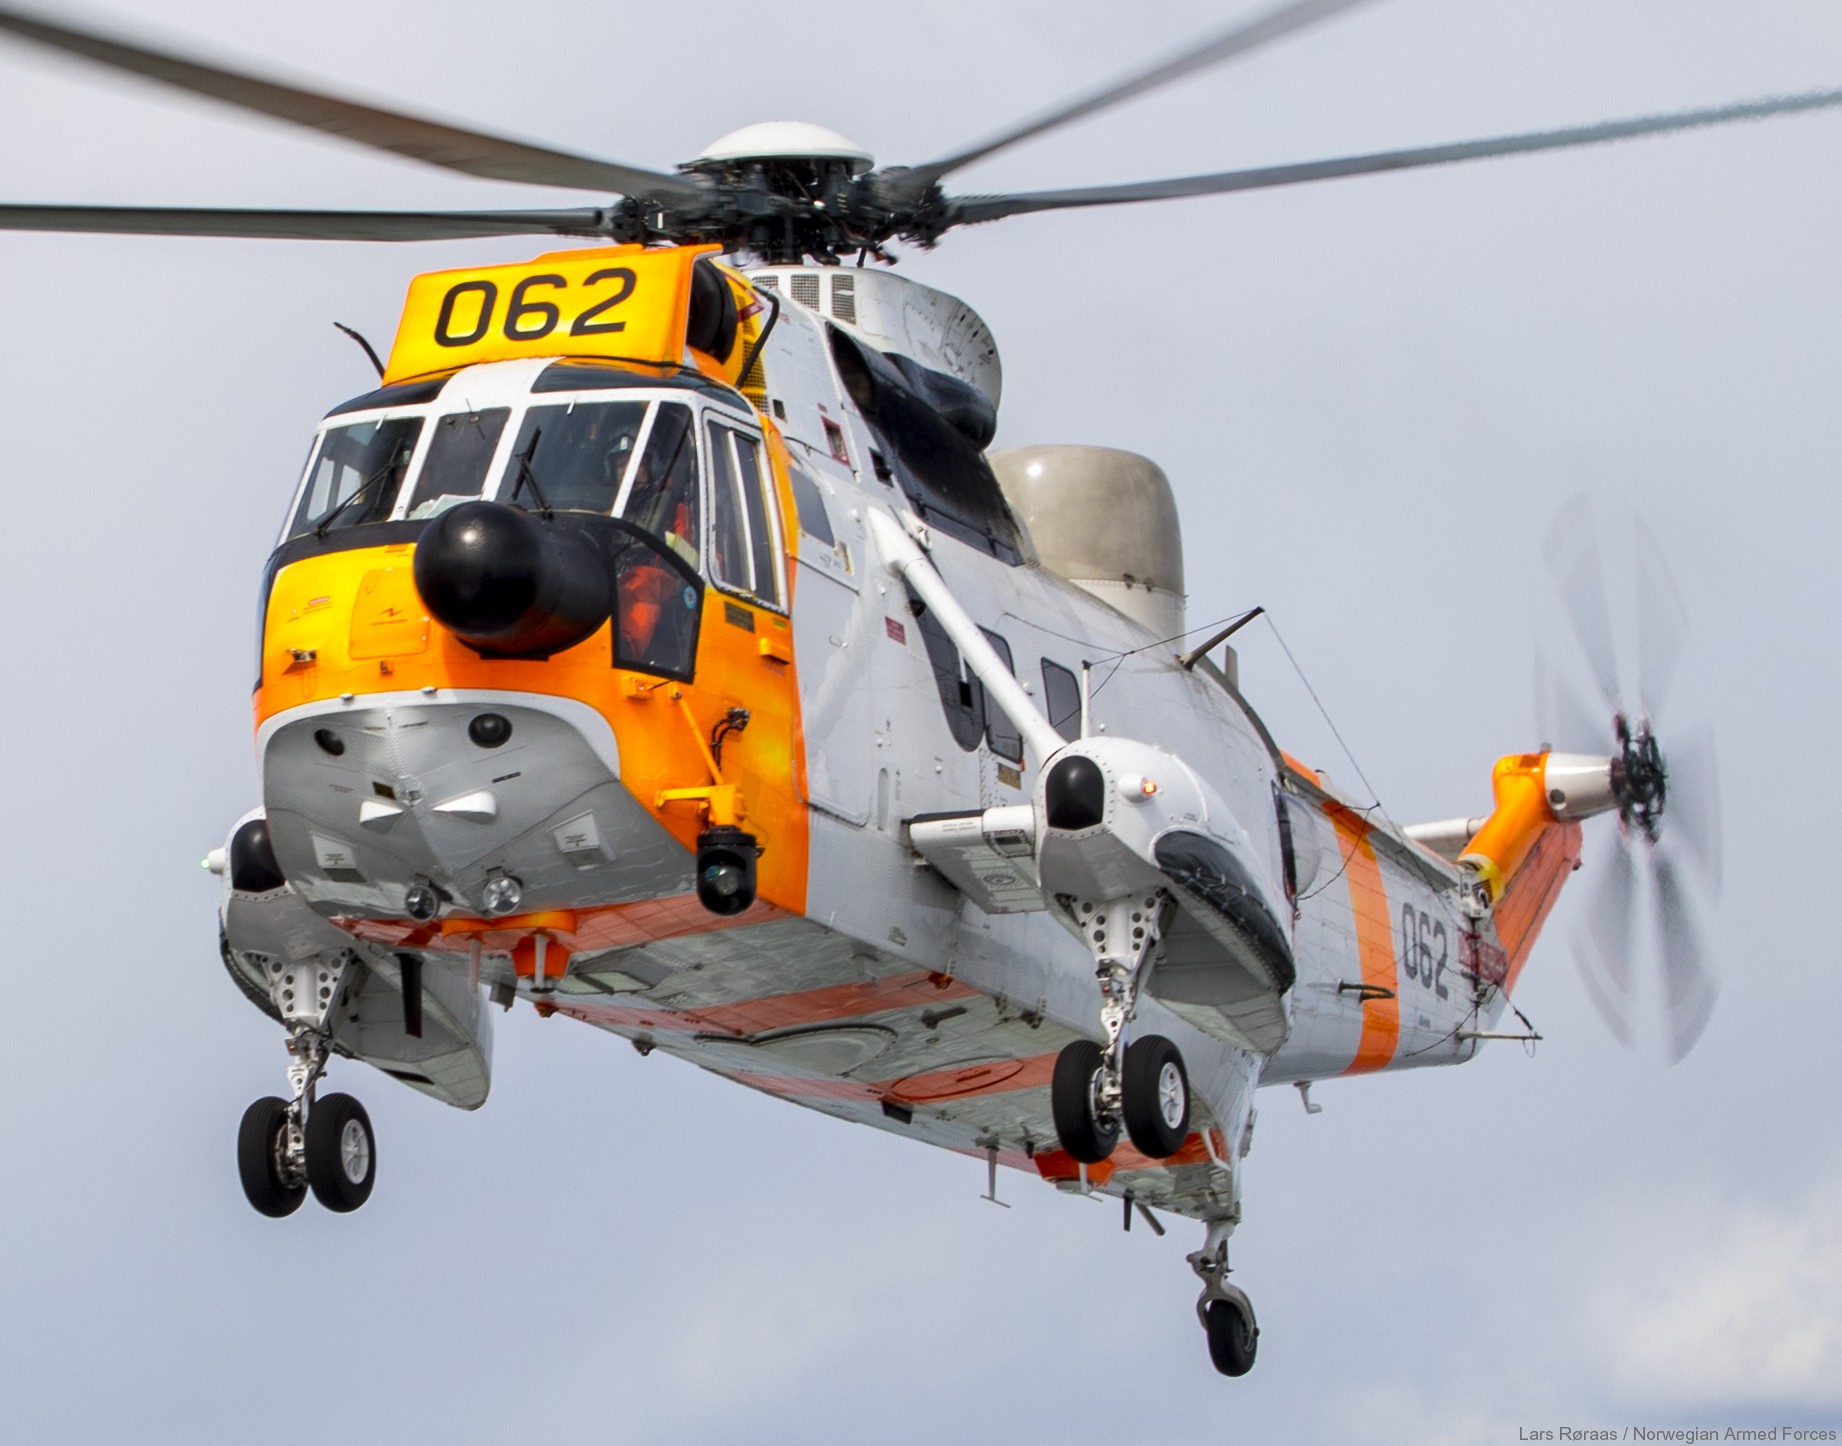 westland ws-61 sea king royal norwegian air force sar rescue 330 squadron skvadron luftforsvaret 062 06